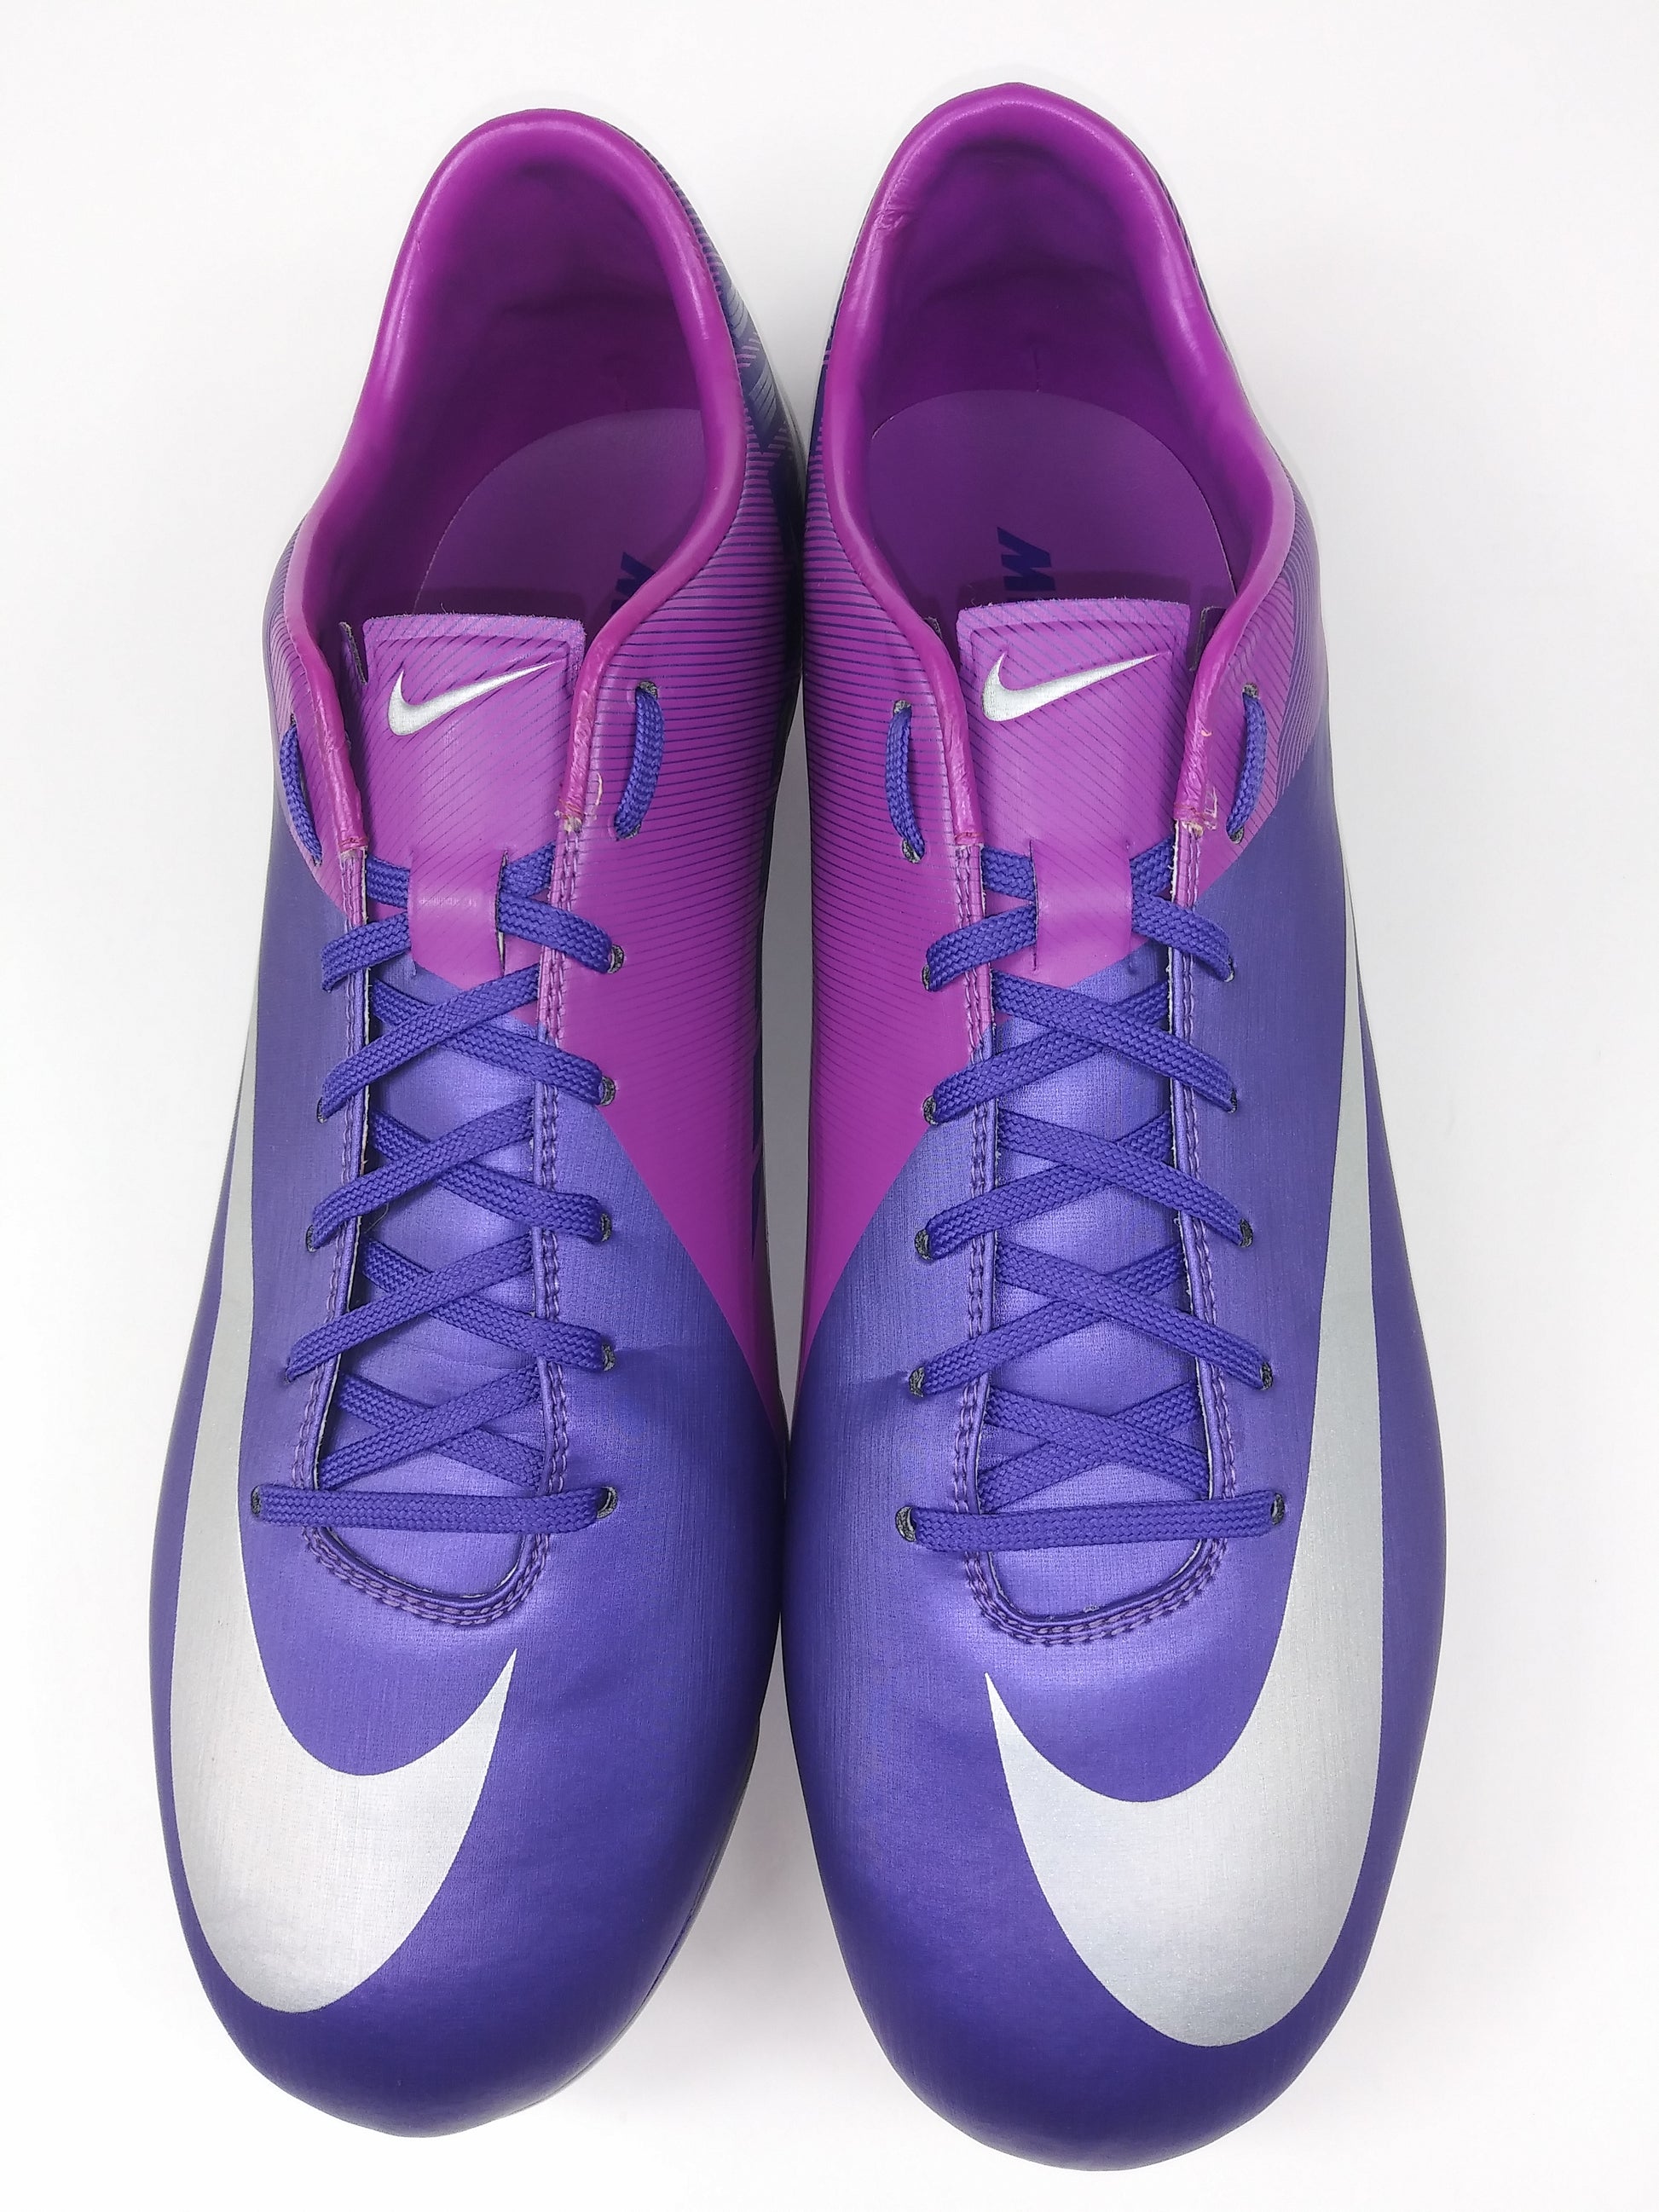 Humano estrecho Estado Nike Mercurial Vapor VII FG Purple Silver – Villegas Footwear